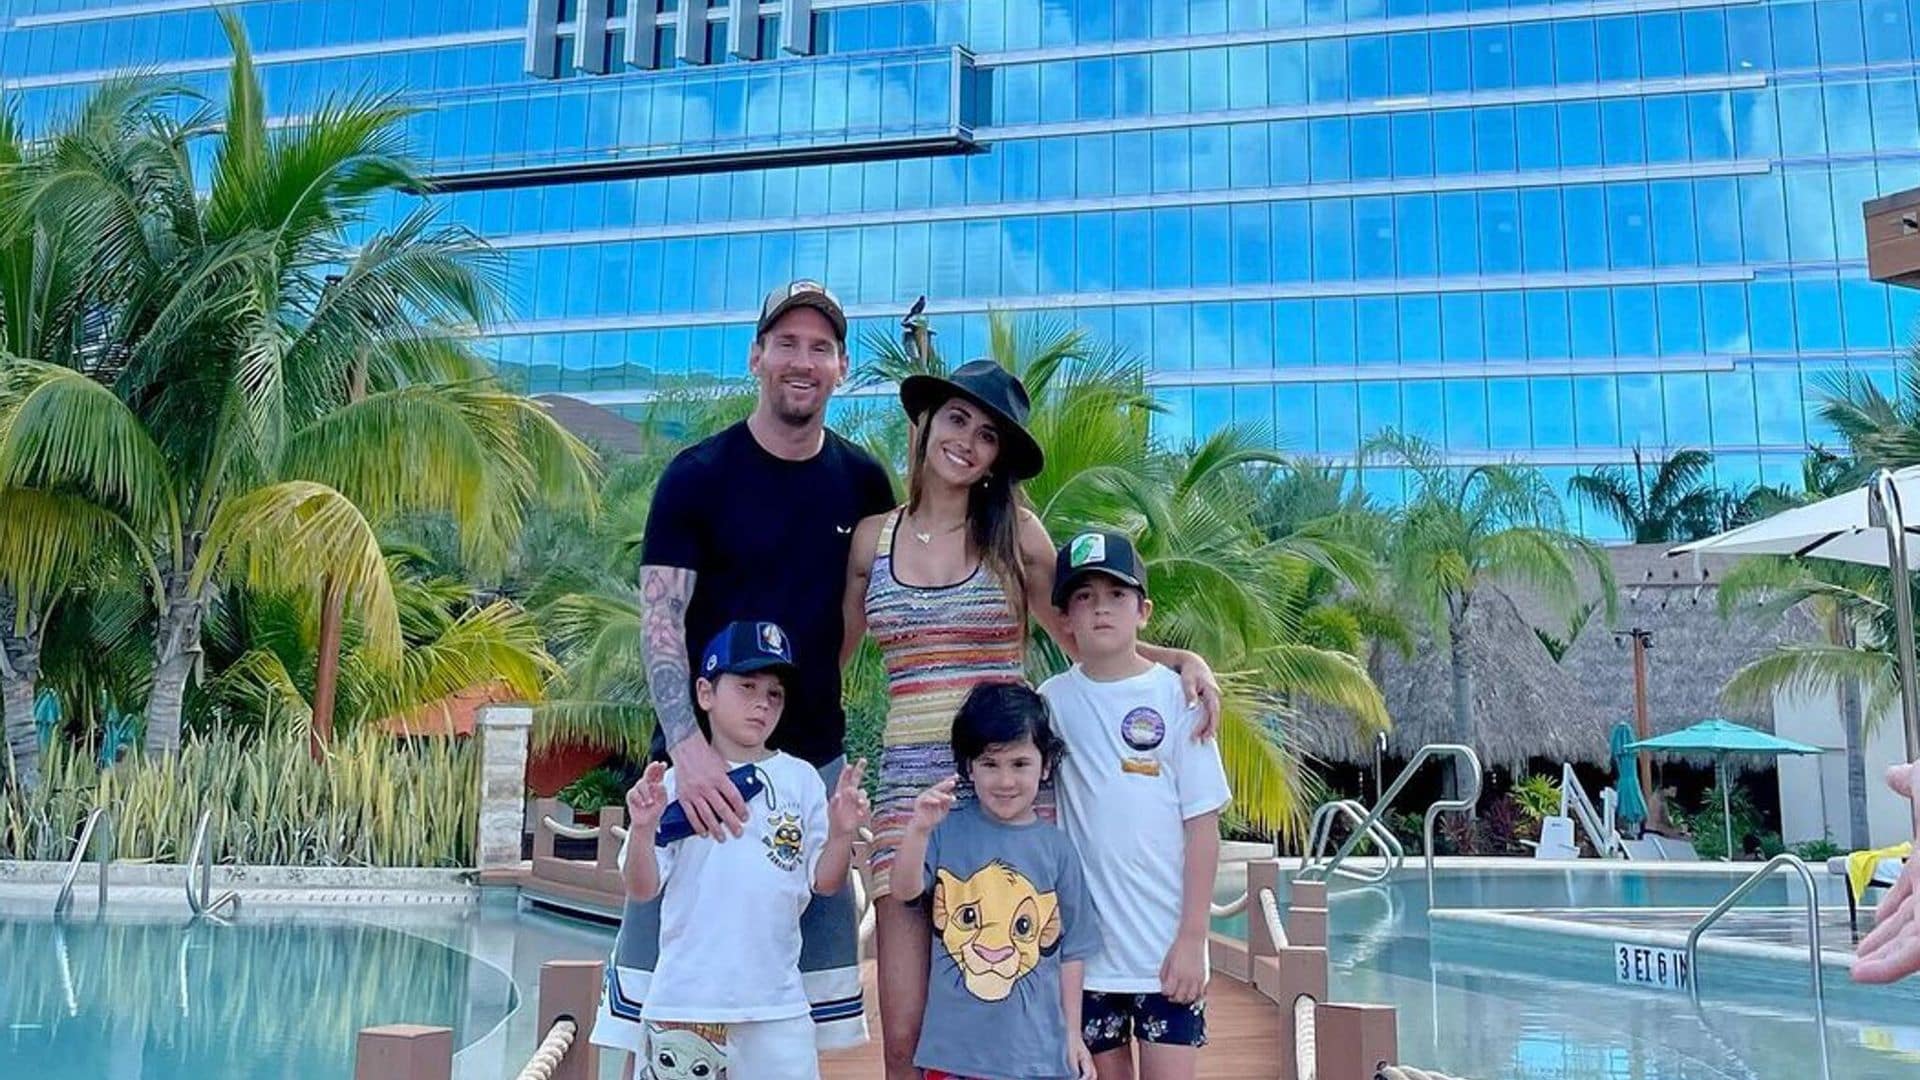 Una gran mansión, sol y playa; así son las vacaciones de Leo Messi en Miami